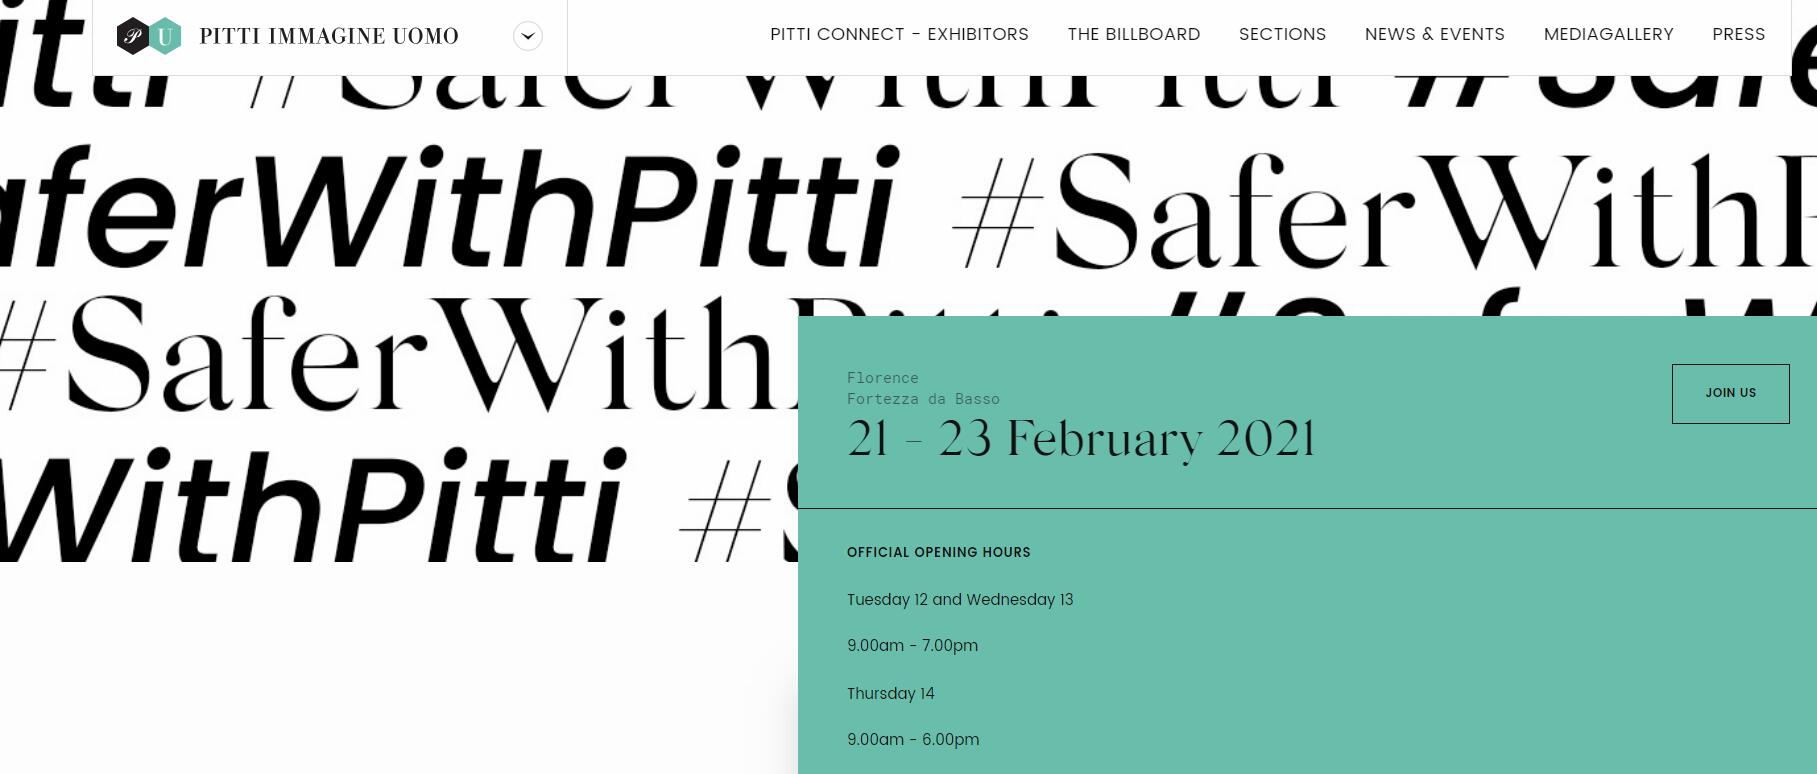 原定明年一月举办的意大利 Pitti Uomo 男装周将延期到二月